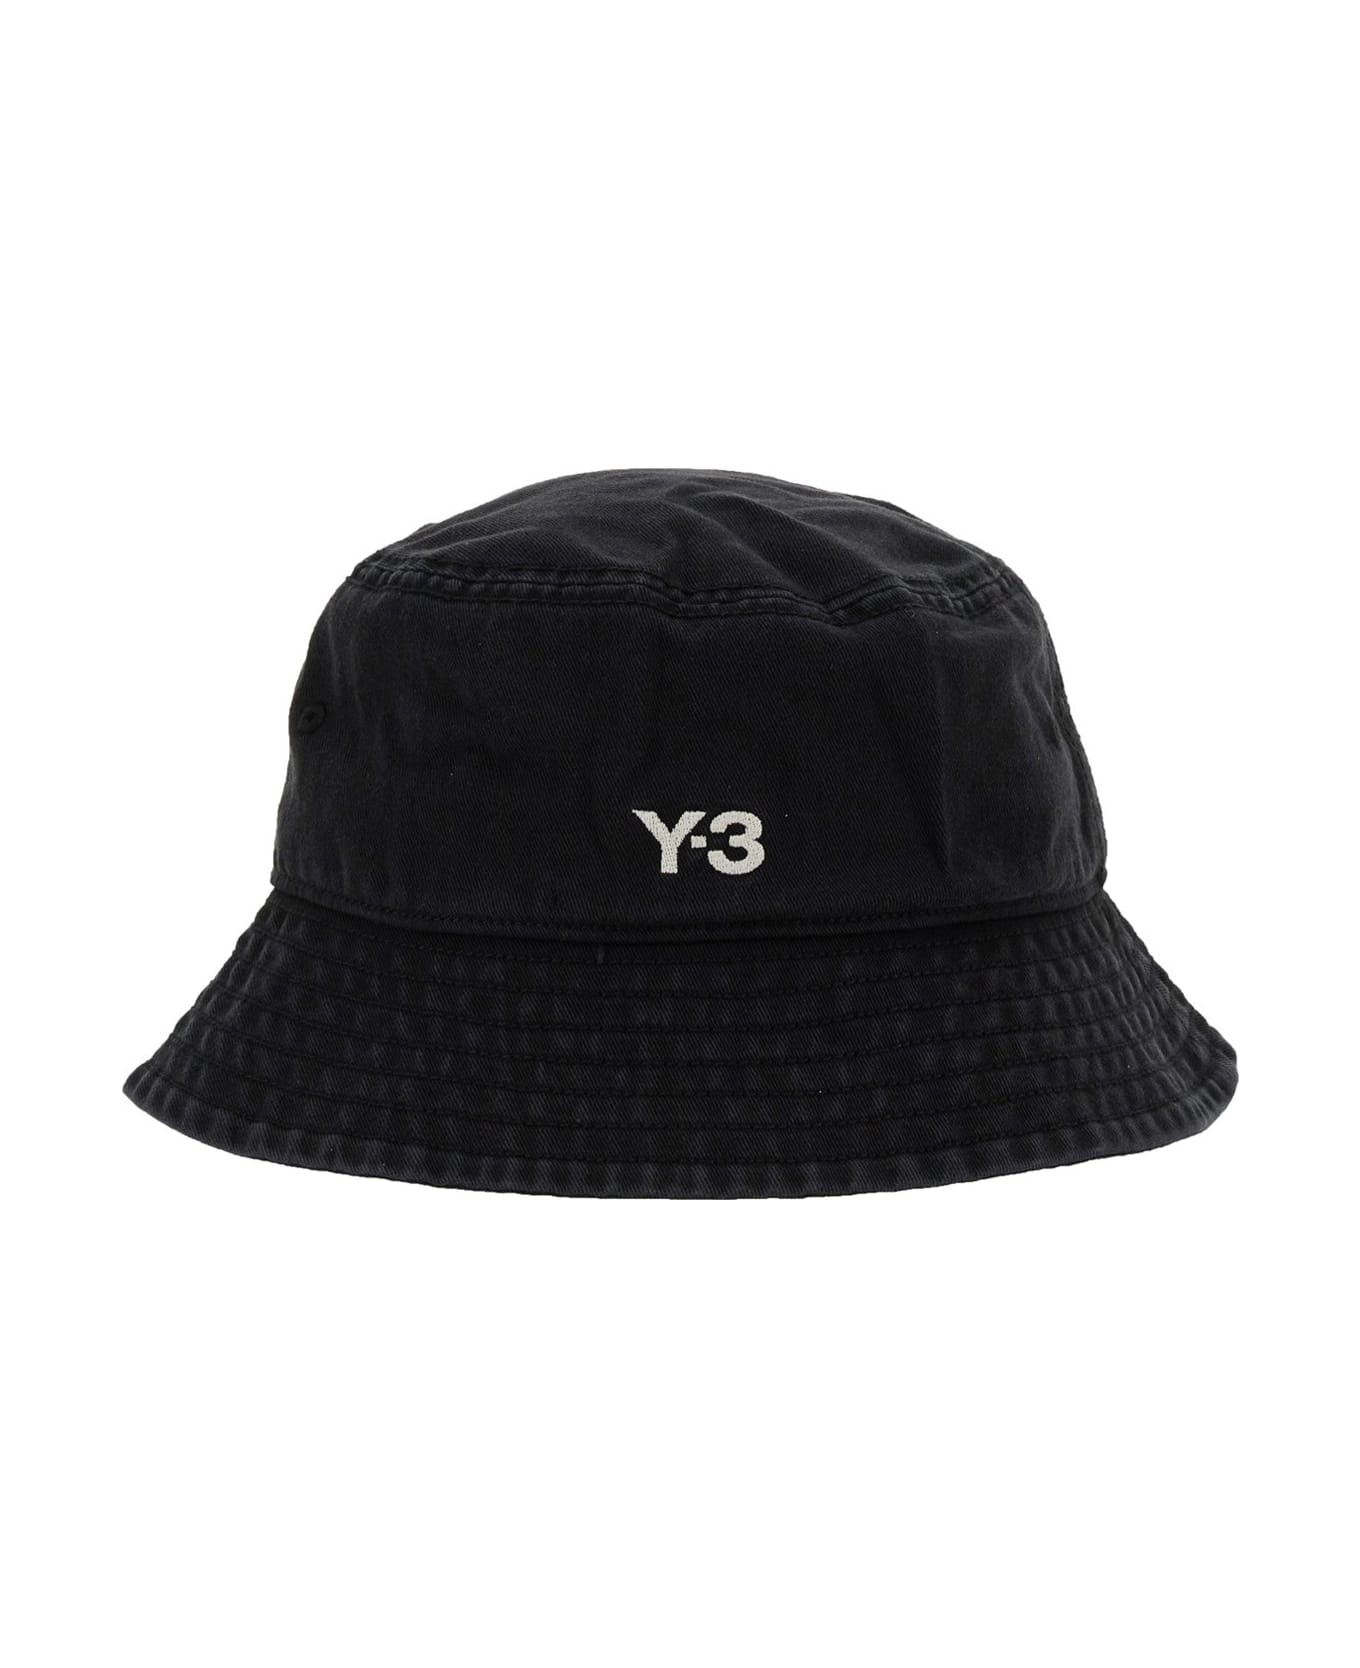 Y-3 Bucket Hat - Black 帽子